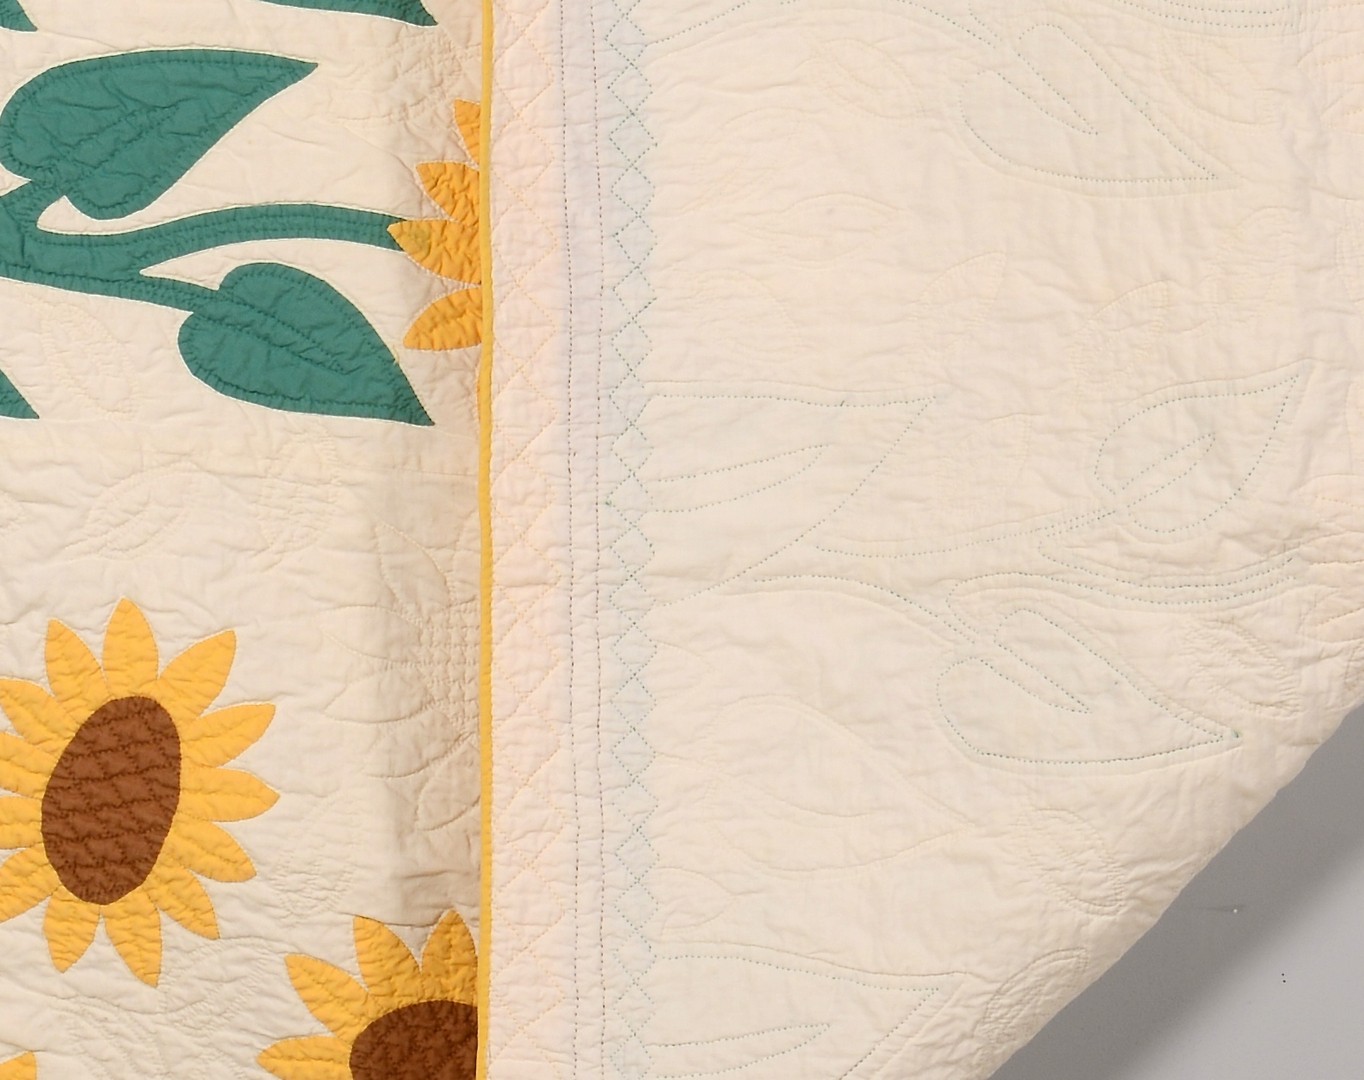 Lot 490: Cotton Applique Sunflower Quilt